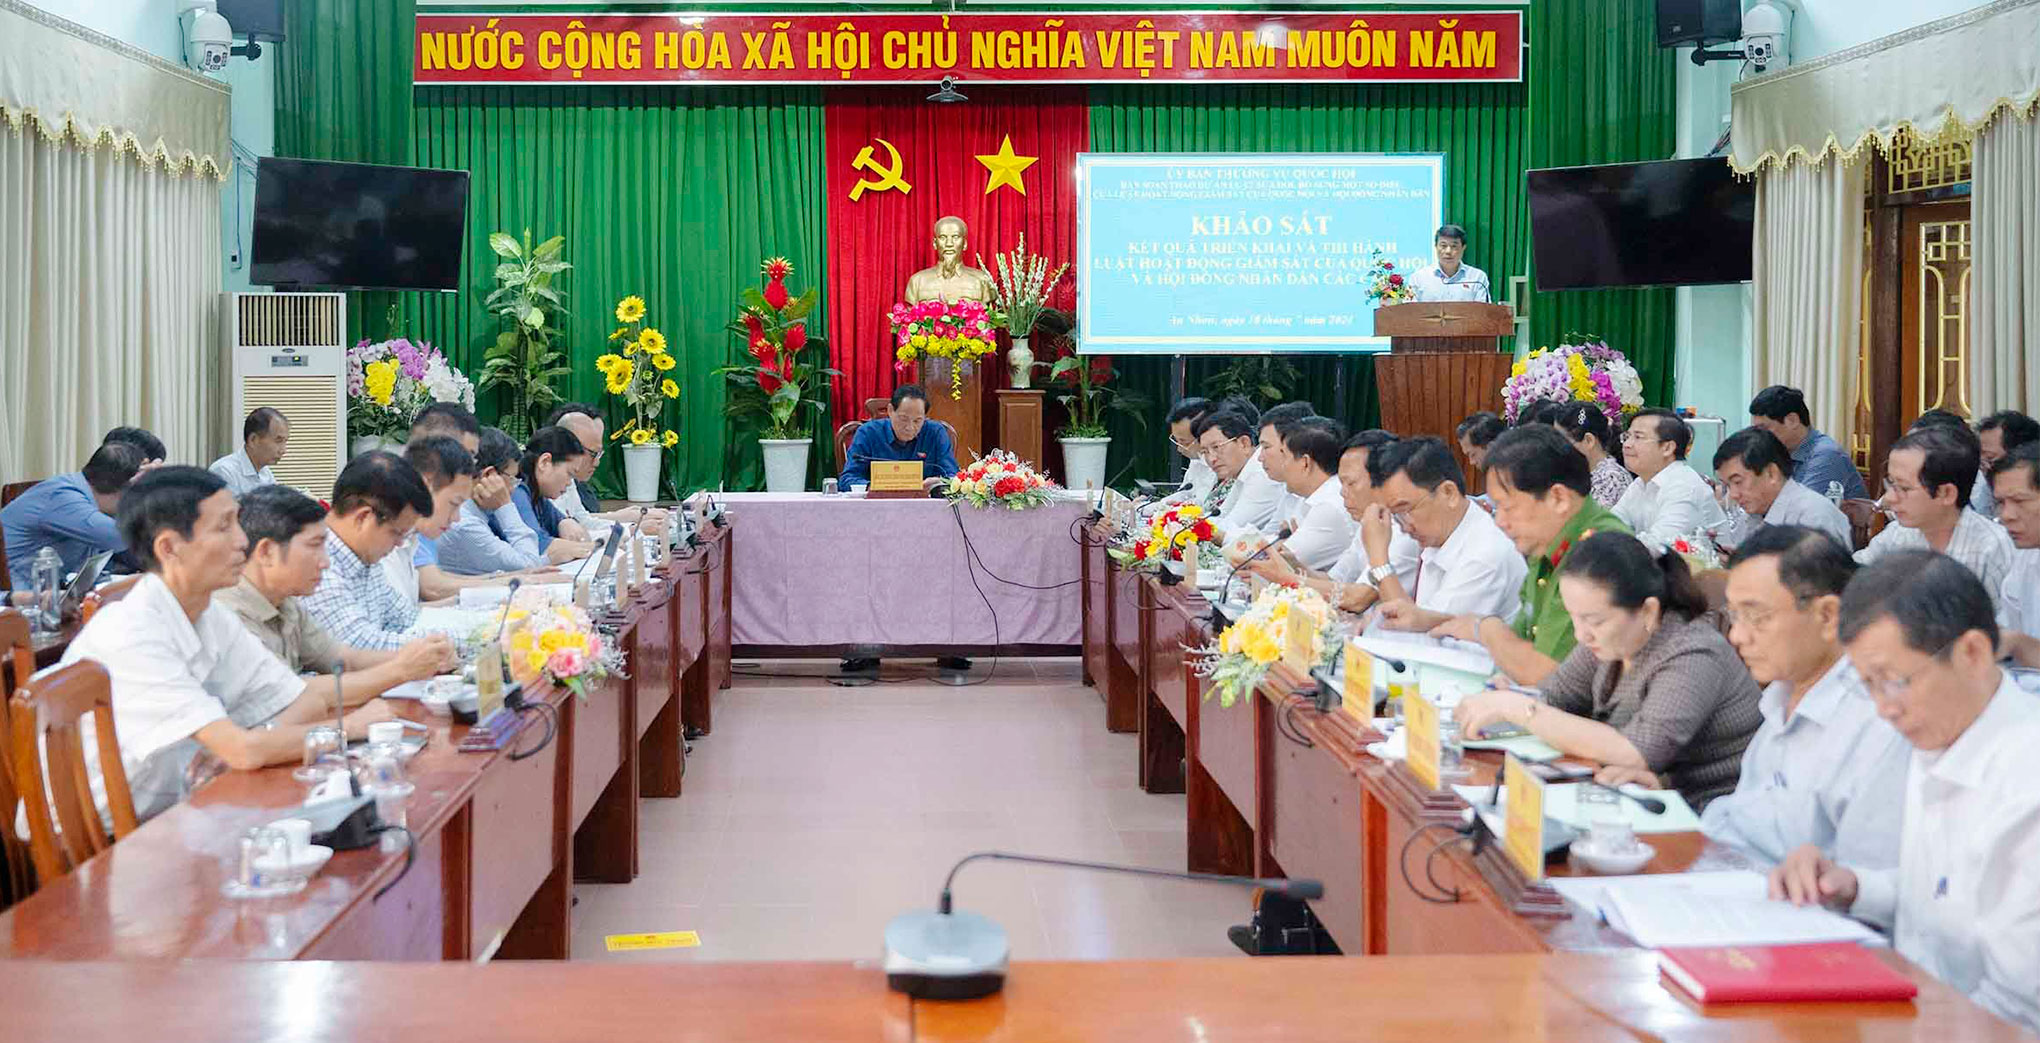 Phó Chủ tịch Quốc hội Trần Quang Phương chủ trì cuộc làm việc với Thường trực HĐND thị xã An Nhơn, Bình Định -0